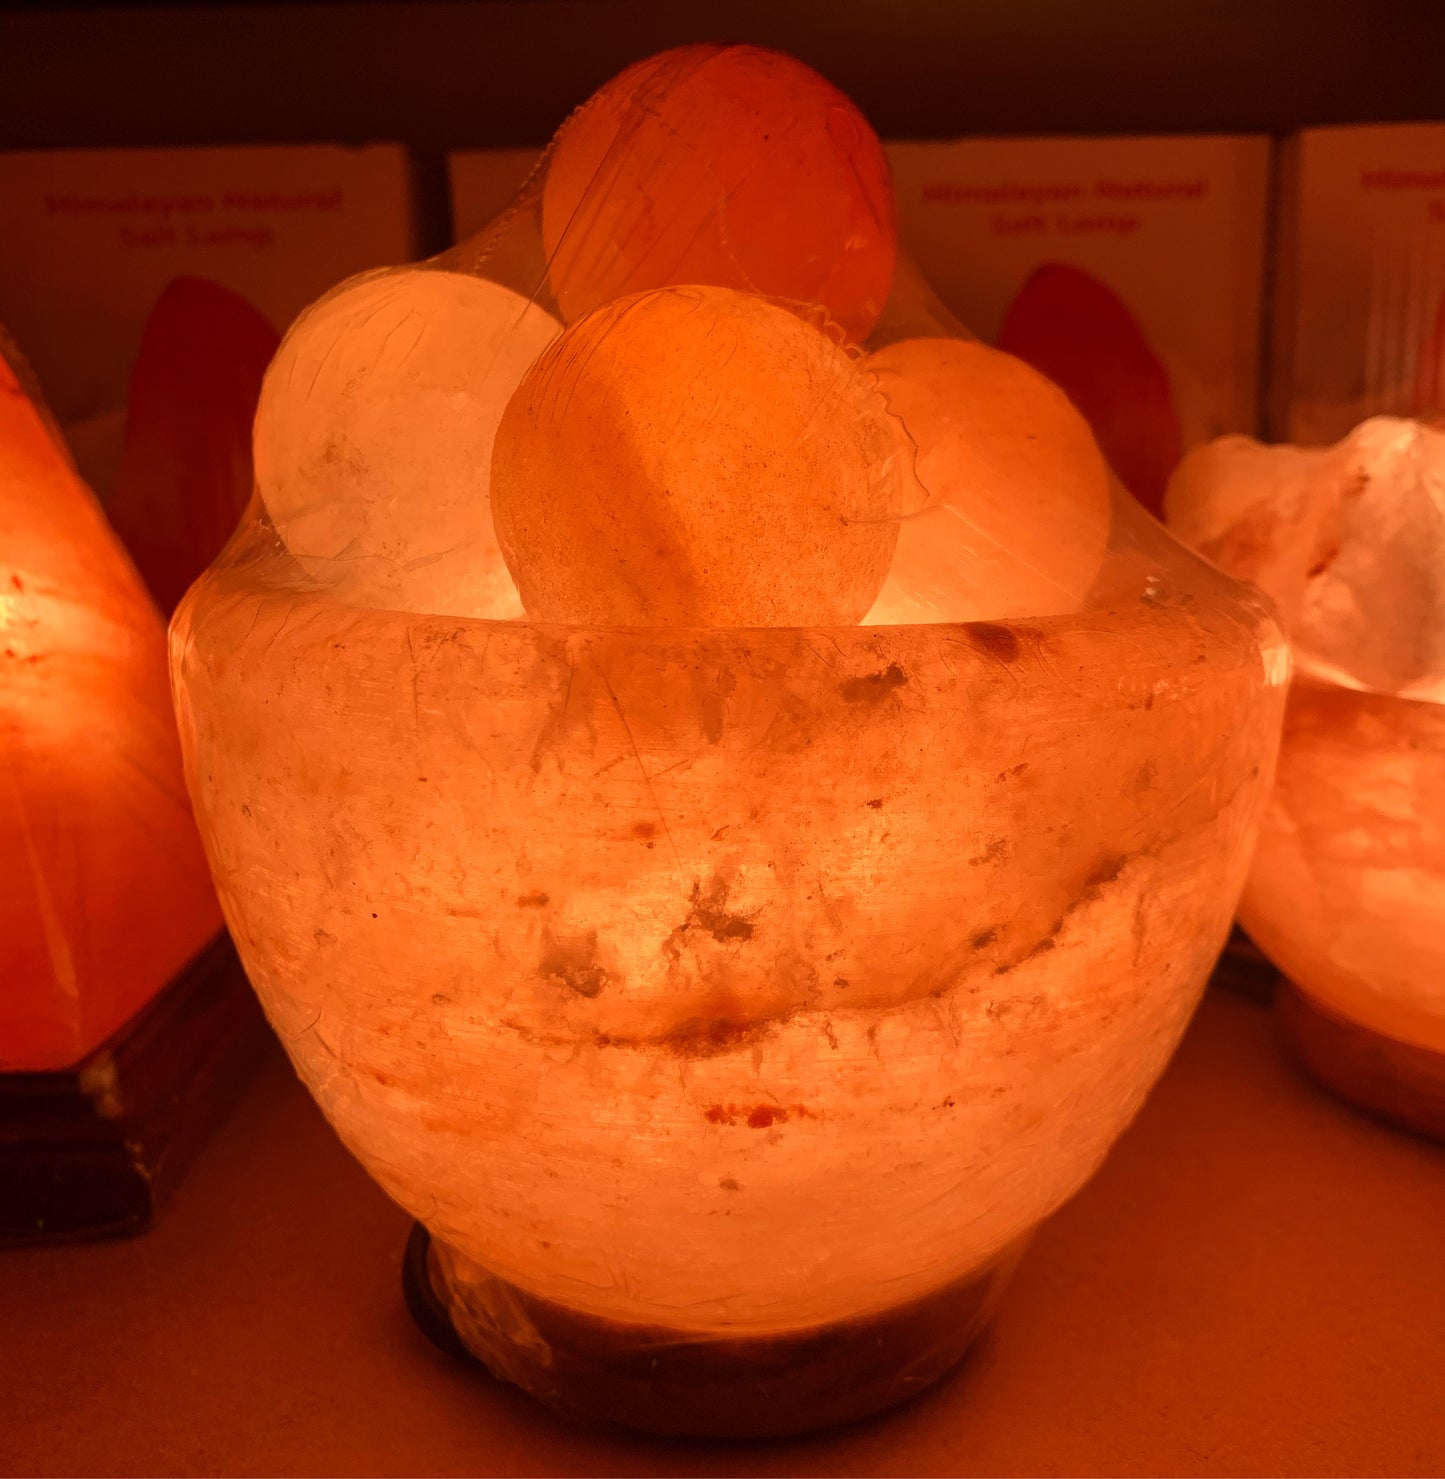 Massage Ball Fire 🔥 Bowl Salt Lamp